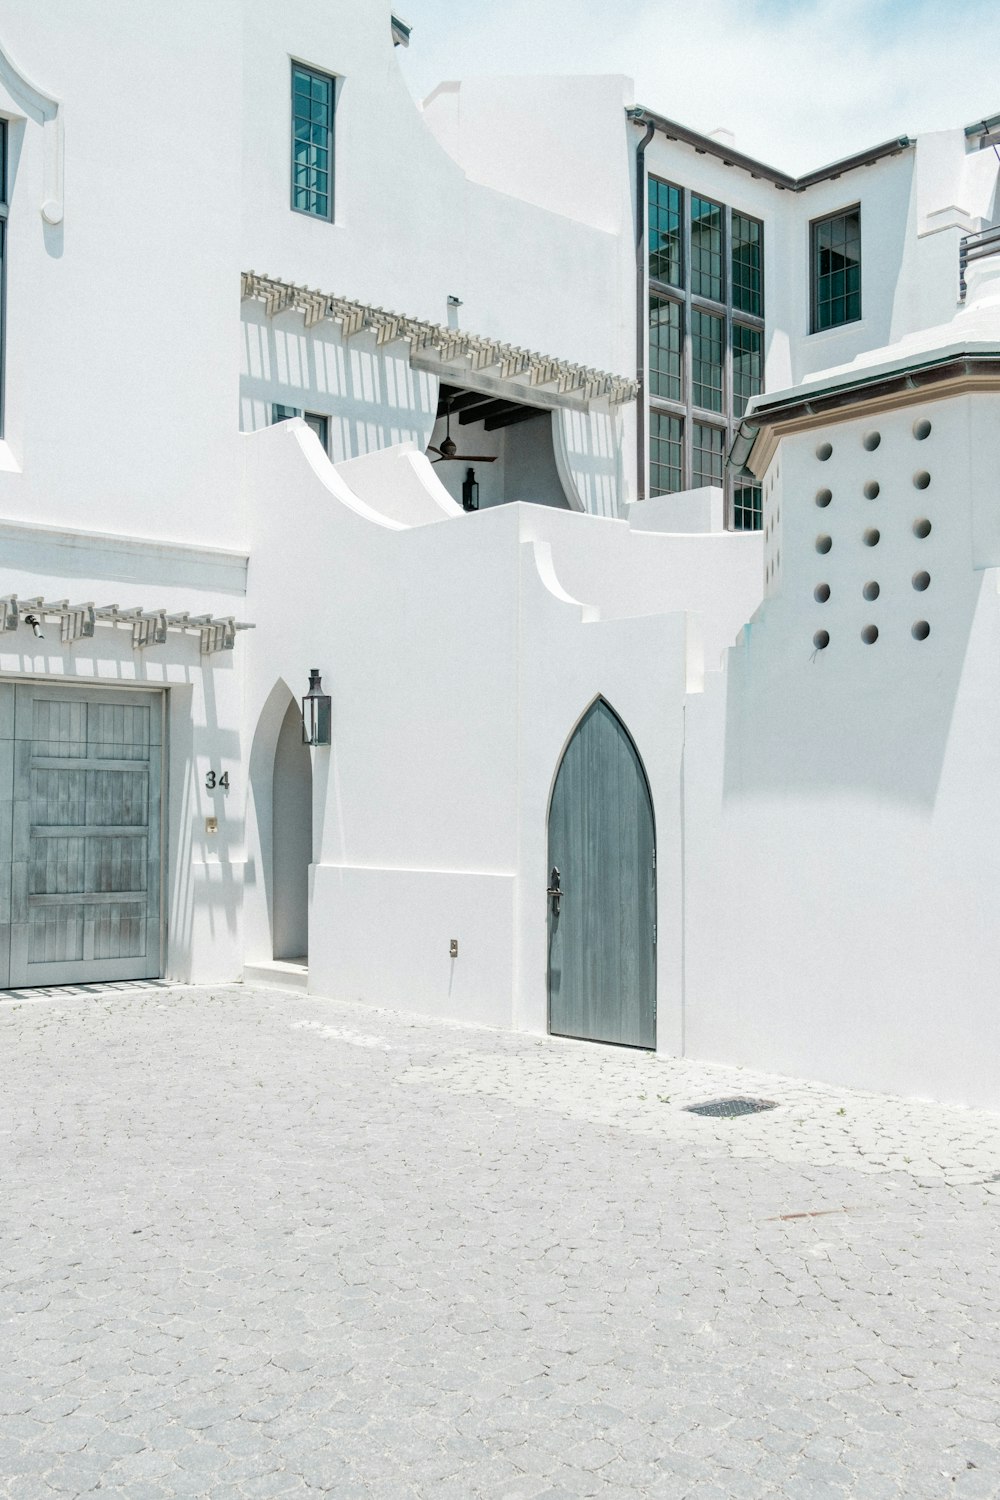 casa in cemento bianco